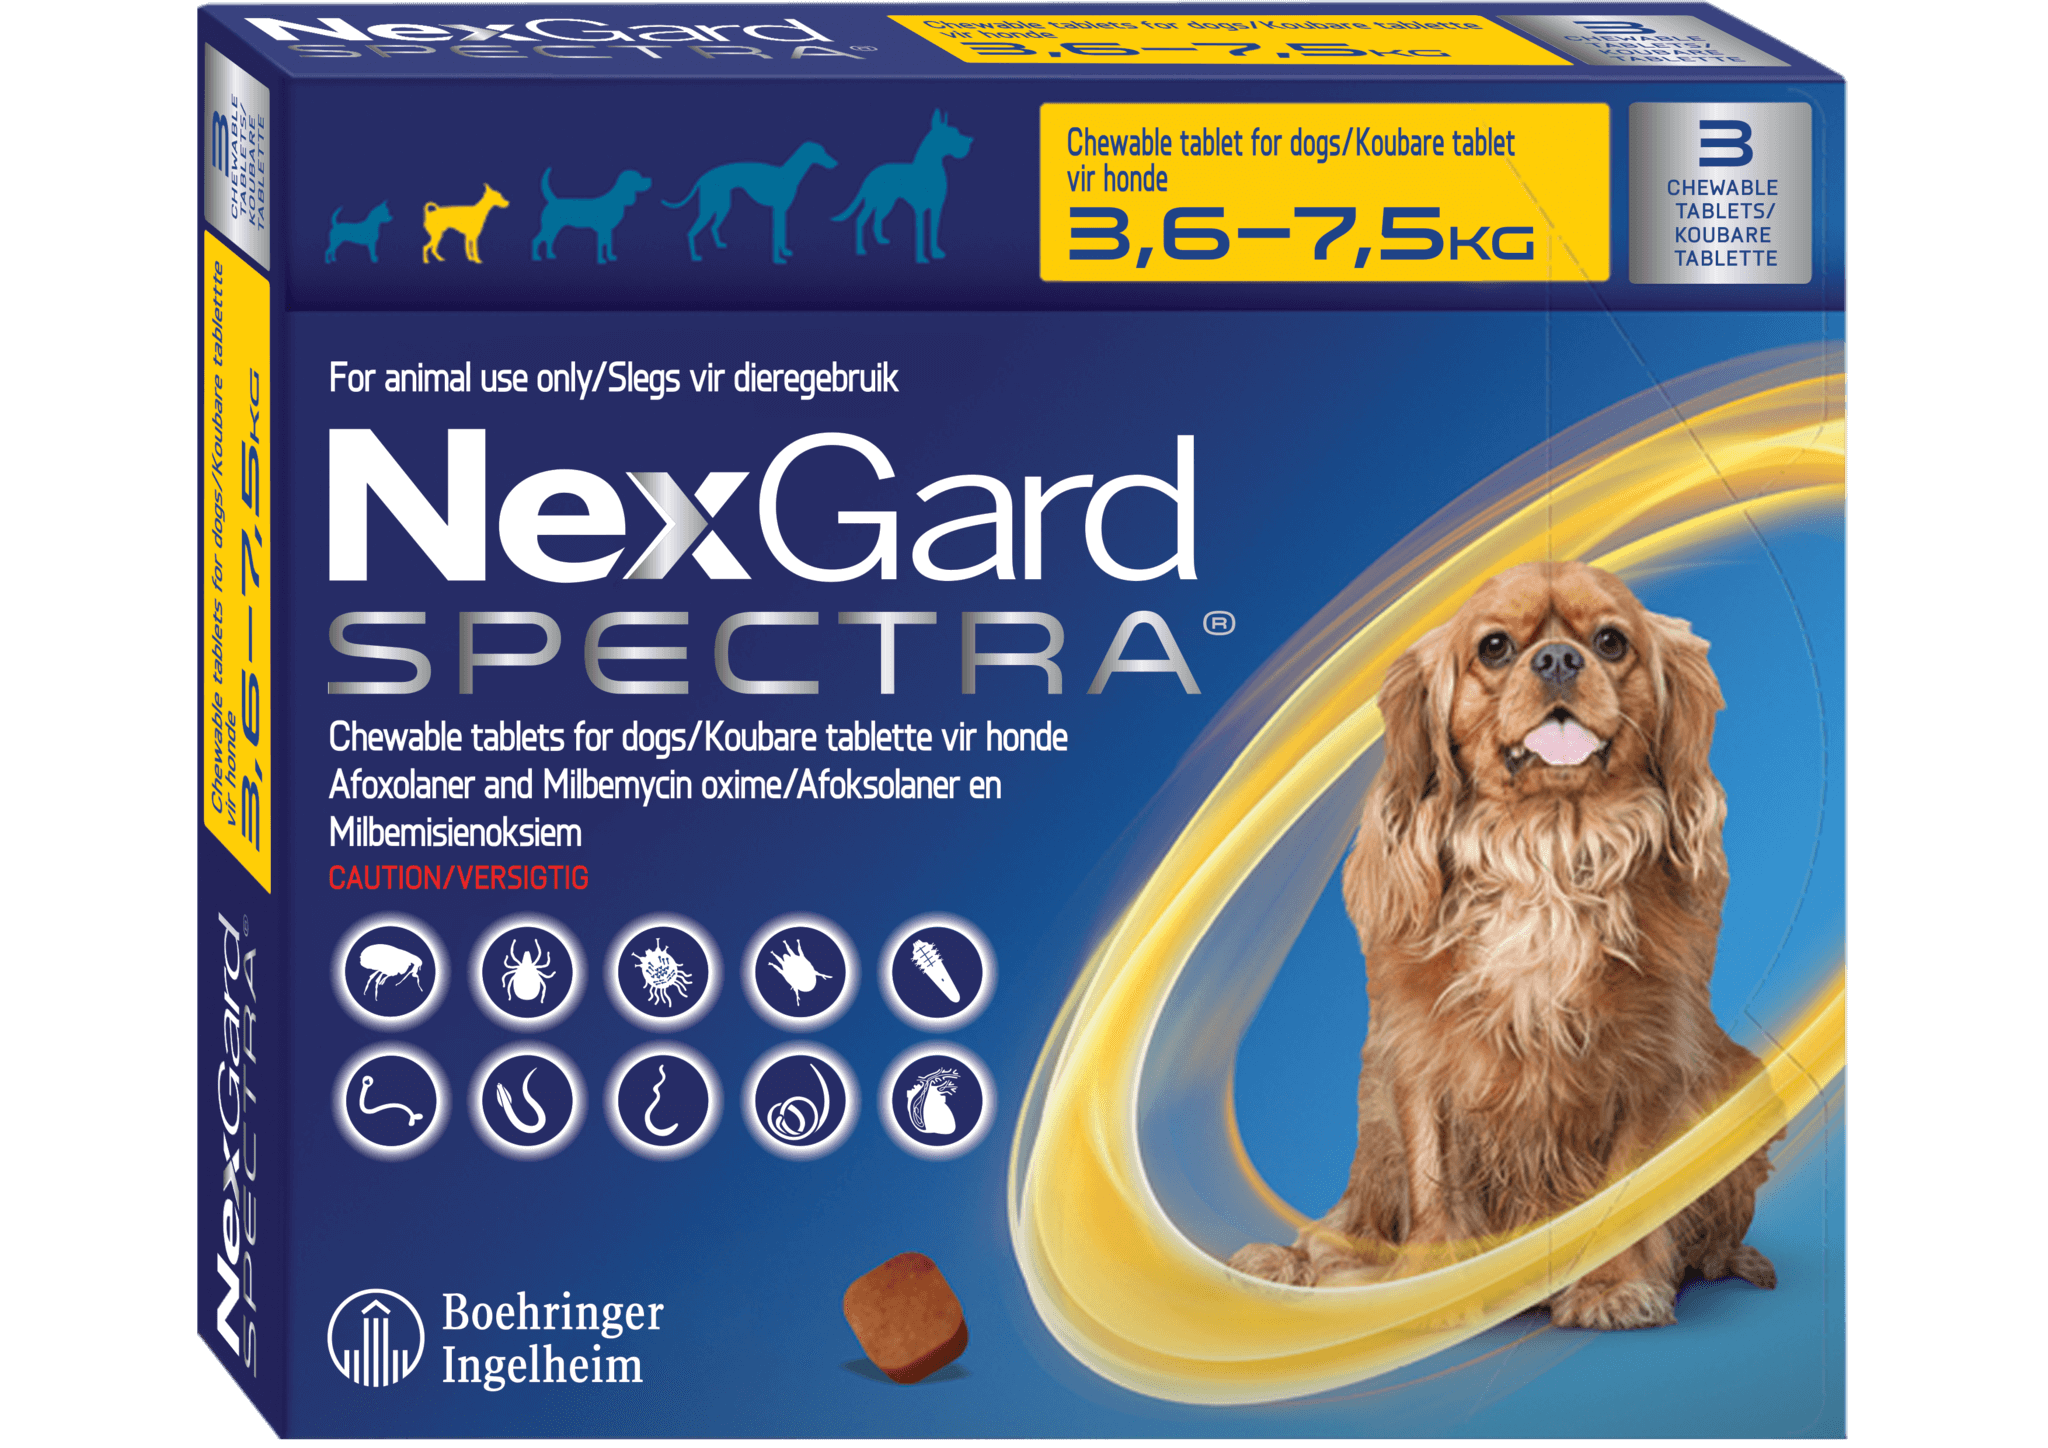 НЕКСГАРД спектра для собак 2-3.5 кг. НЕКСГАРД спектра для собак 3,5-7. НЕКСГАРД для собак 7.5. NEXGARD Spectra для собак. Нексгард спектра инструкция